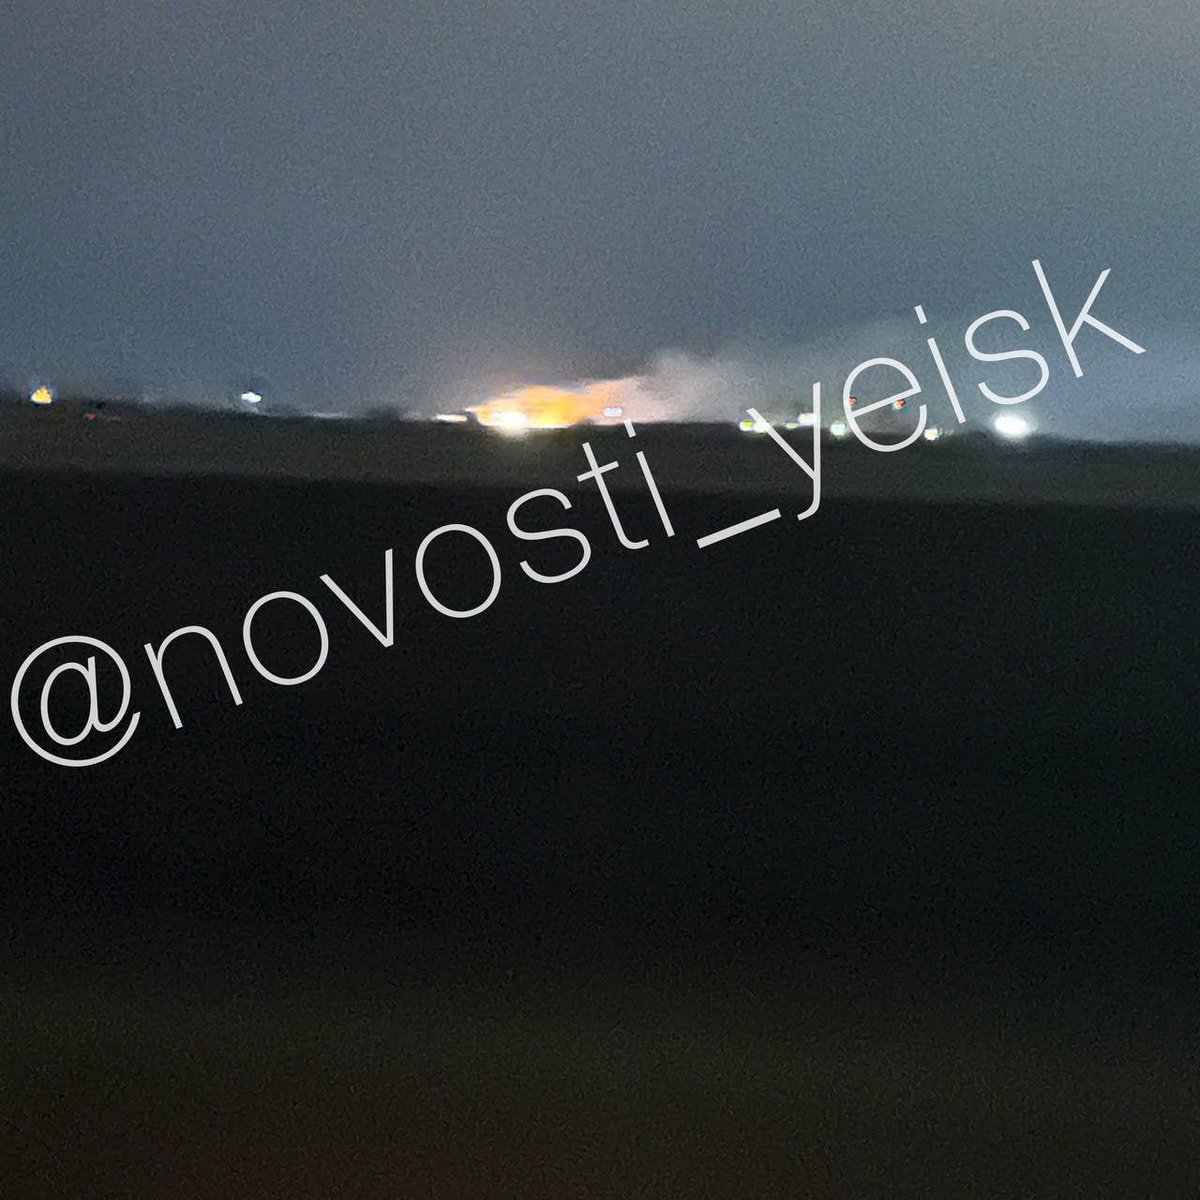 Ziņots par ugunsgrēku un sprādzieniem netālu no aviobāzes Jejskā, Krasnodaras apgabalā